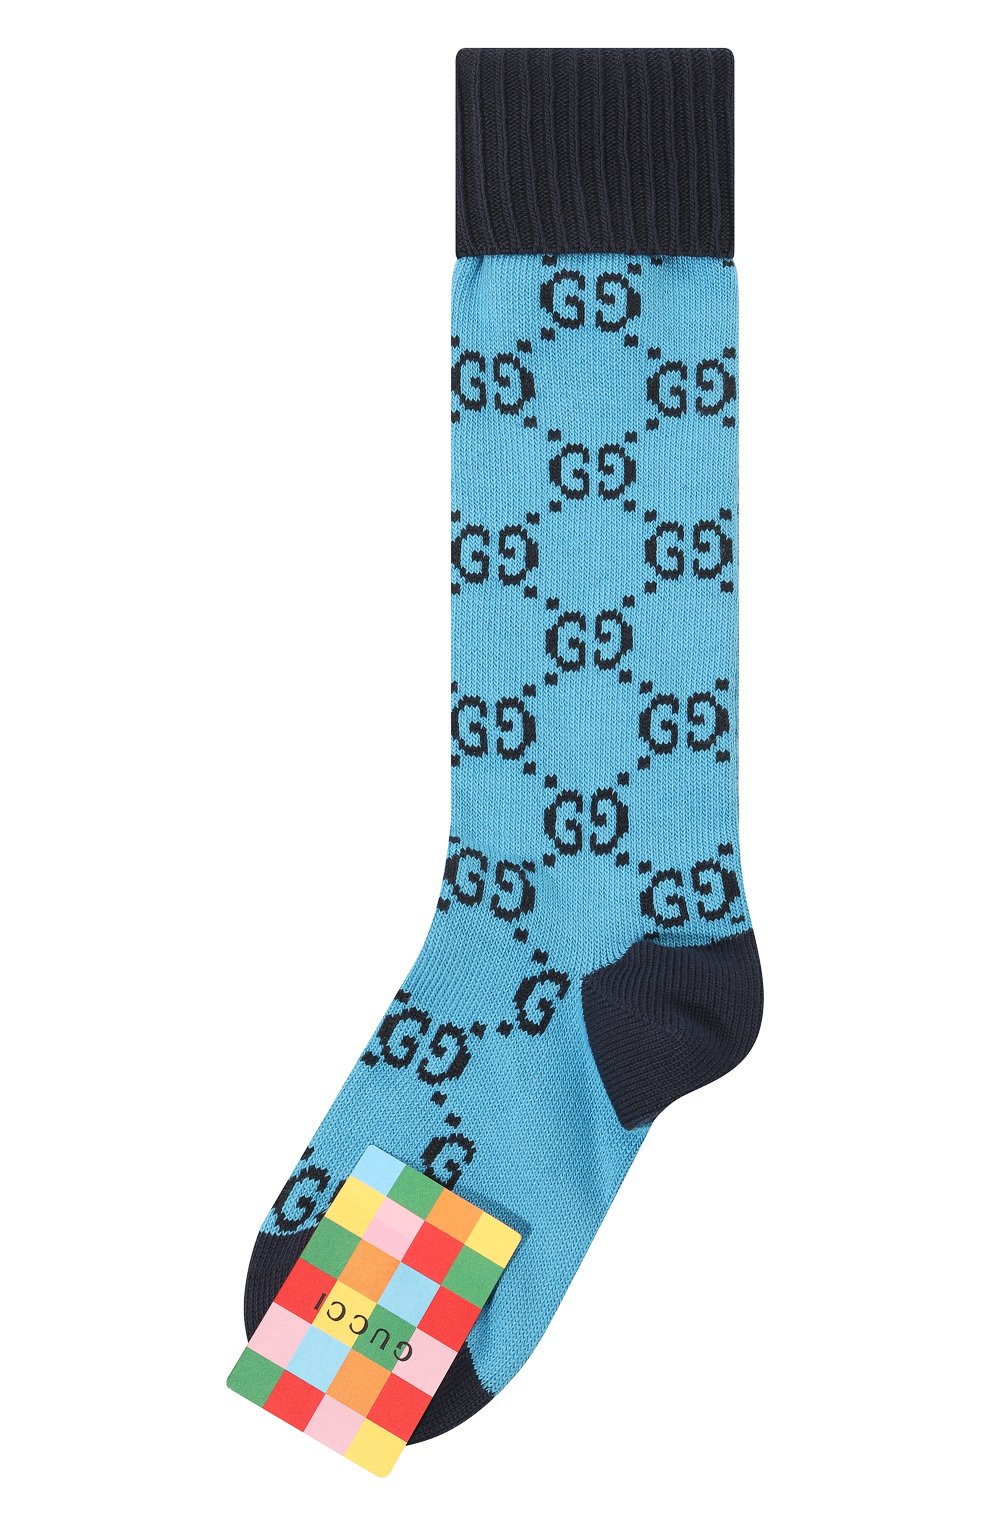 Женские хлопковые носки GUCCI голубого цвета, арт. 476336 3G701 | Фото 1 (Материал внешний: Хлопок)